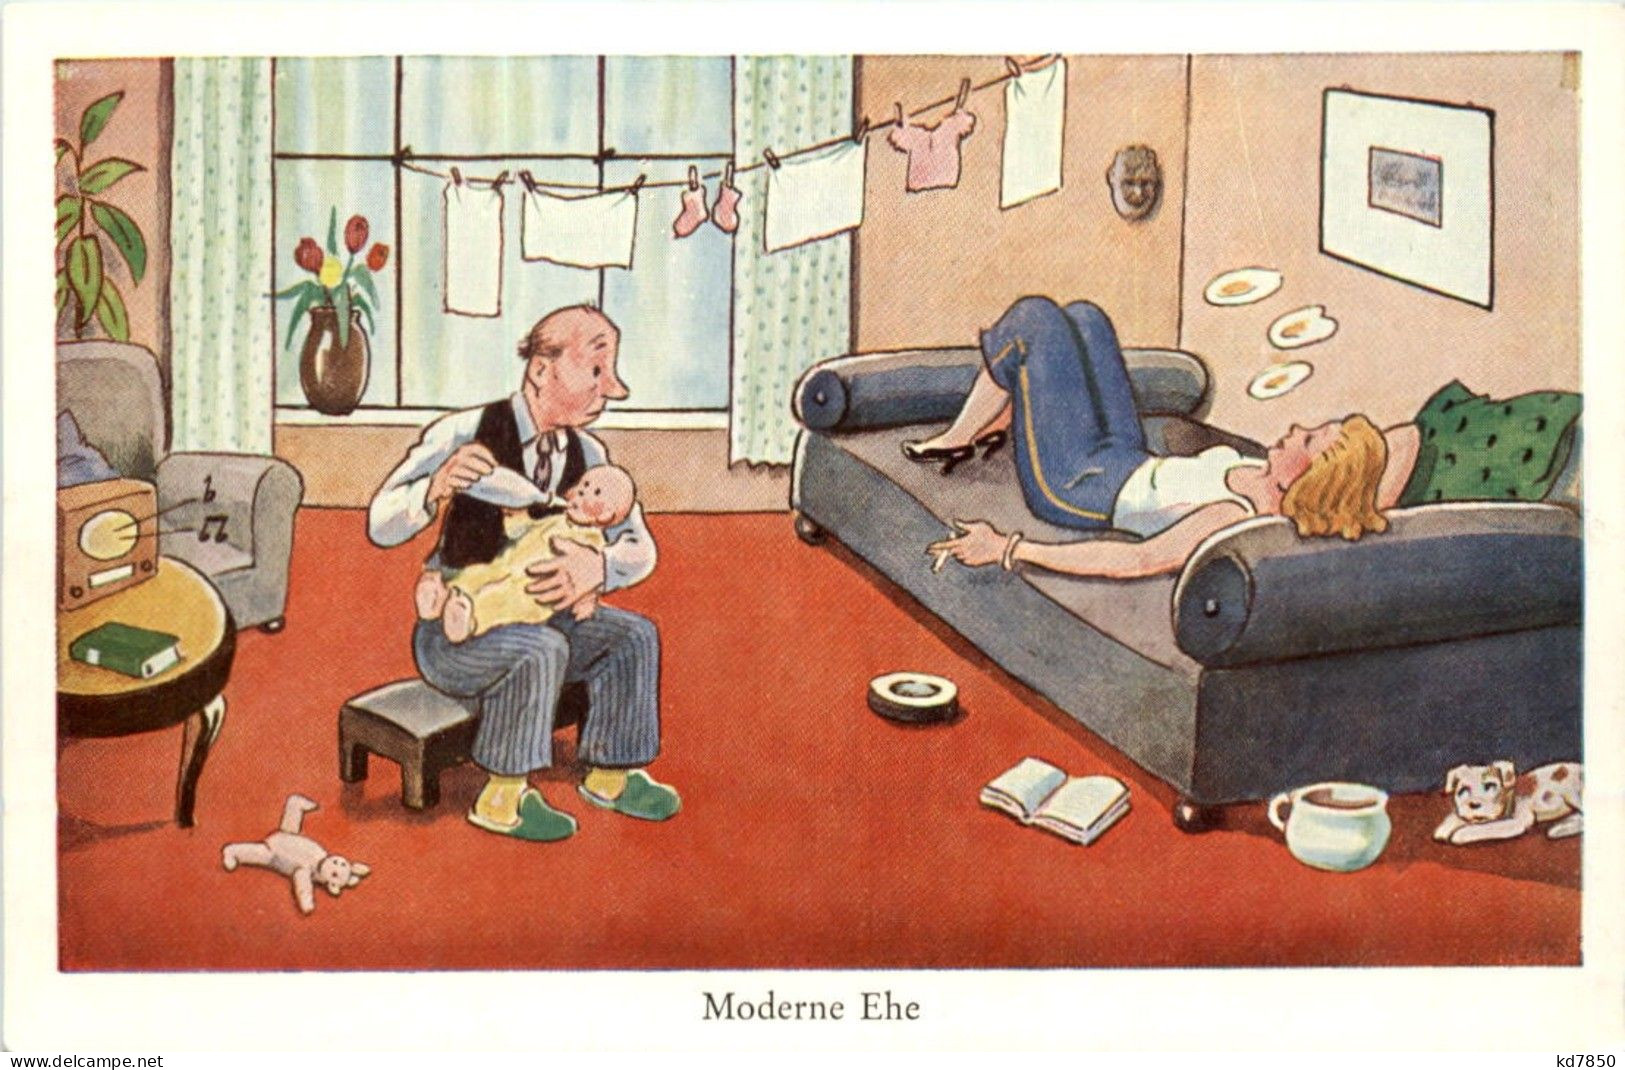 Moderne Ehe - Humor